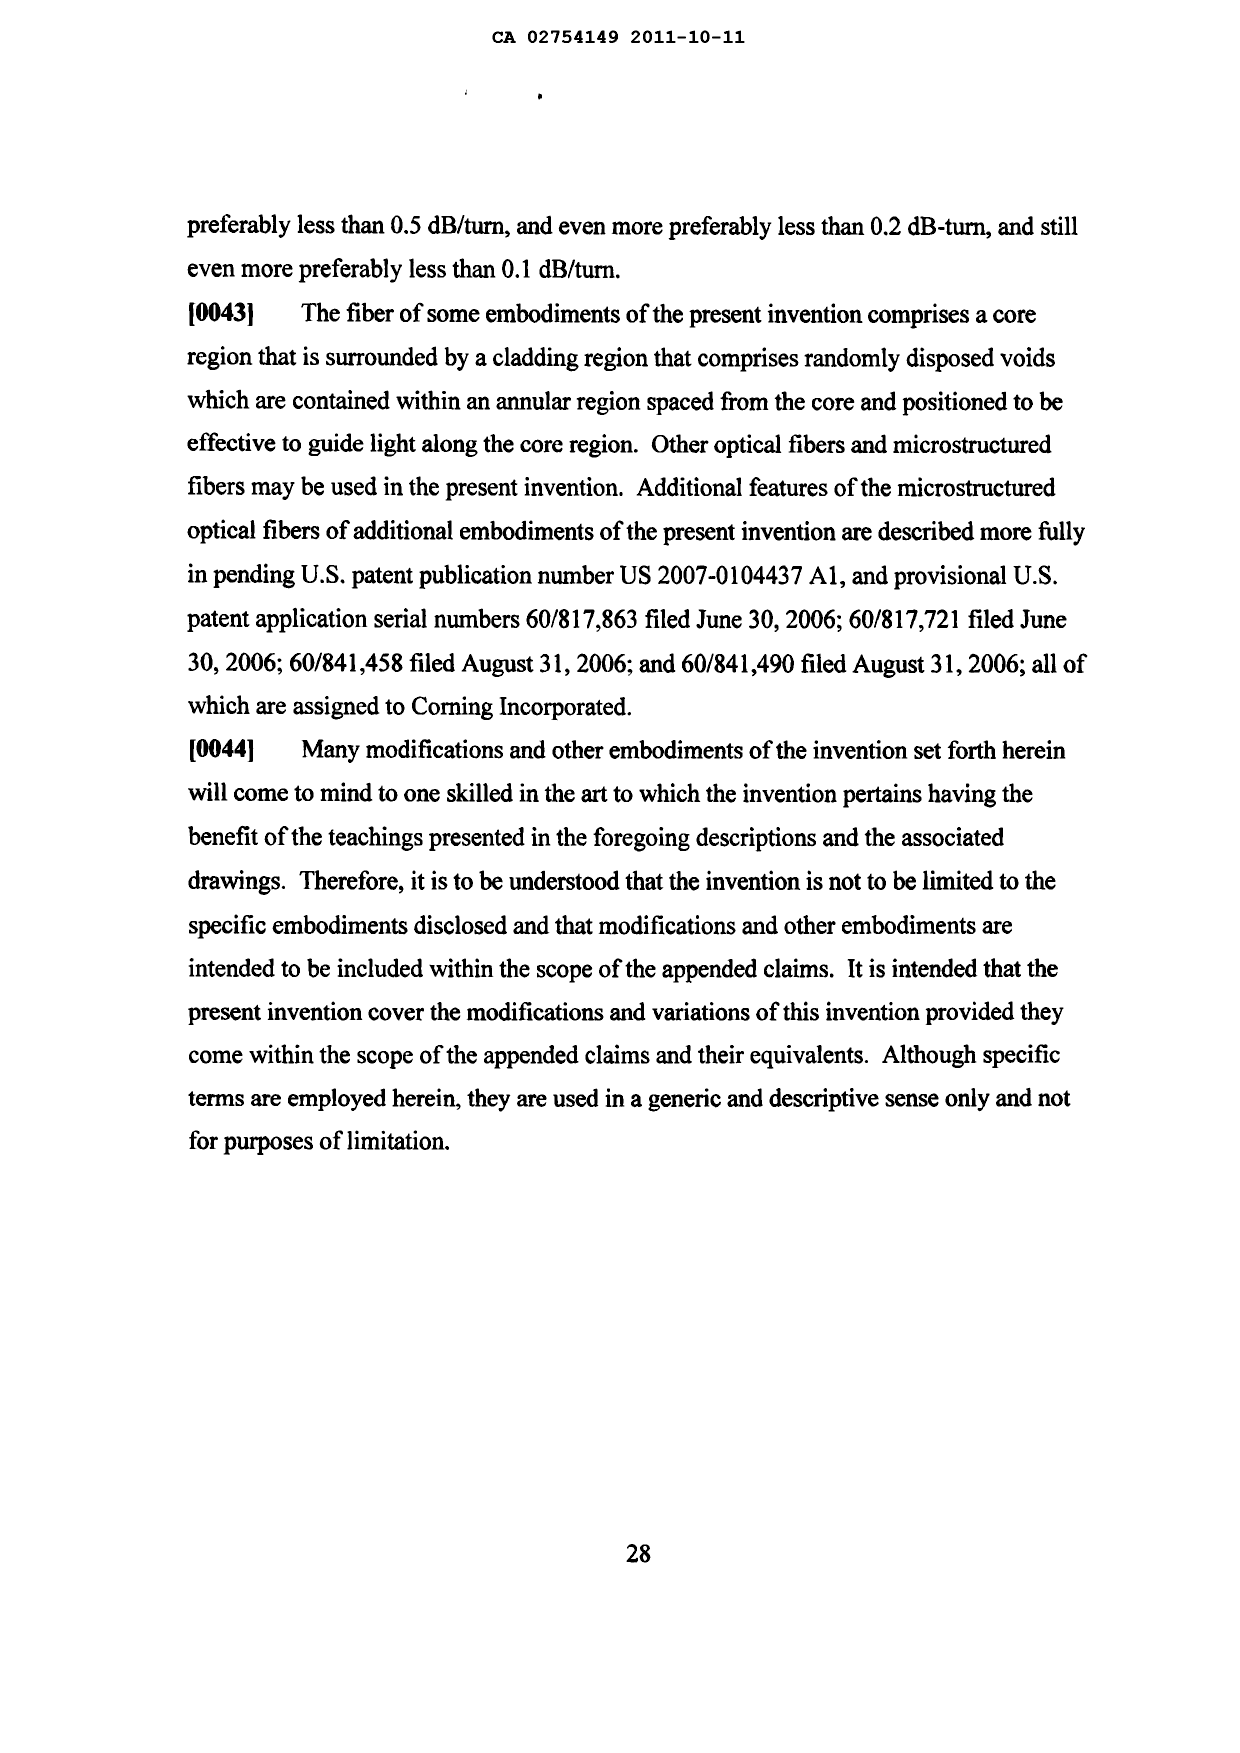 Document de brevet canadien 2754149. Description 20101211. Image 28 de 28